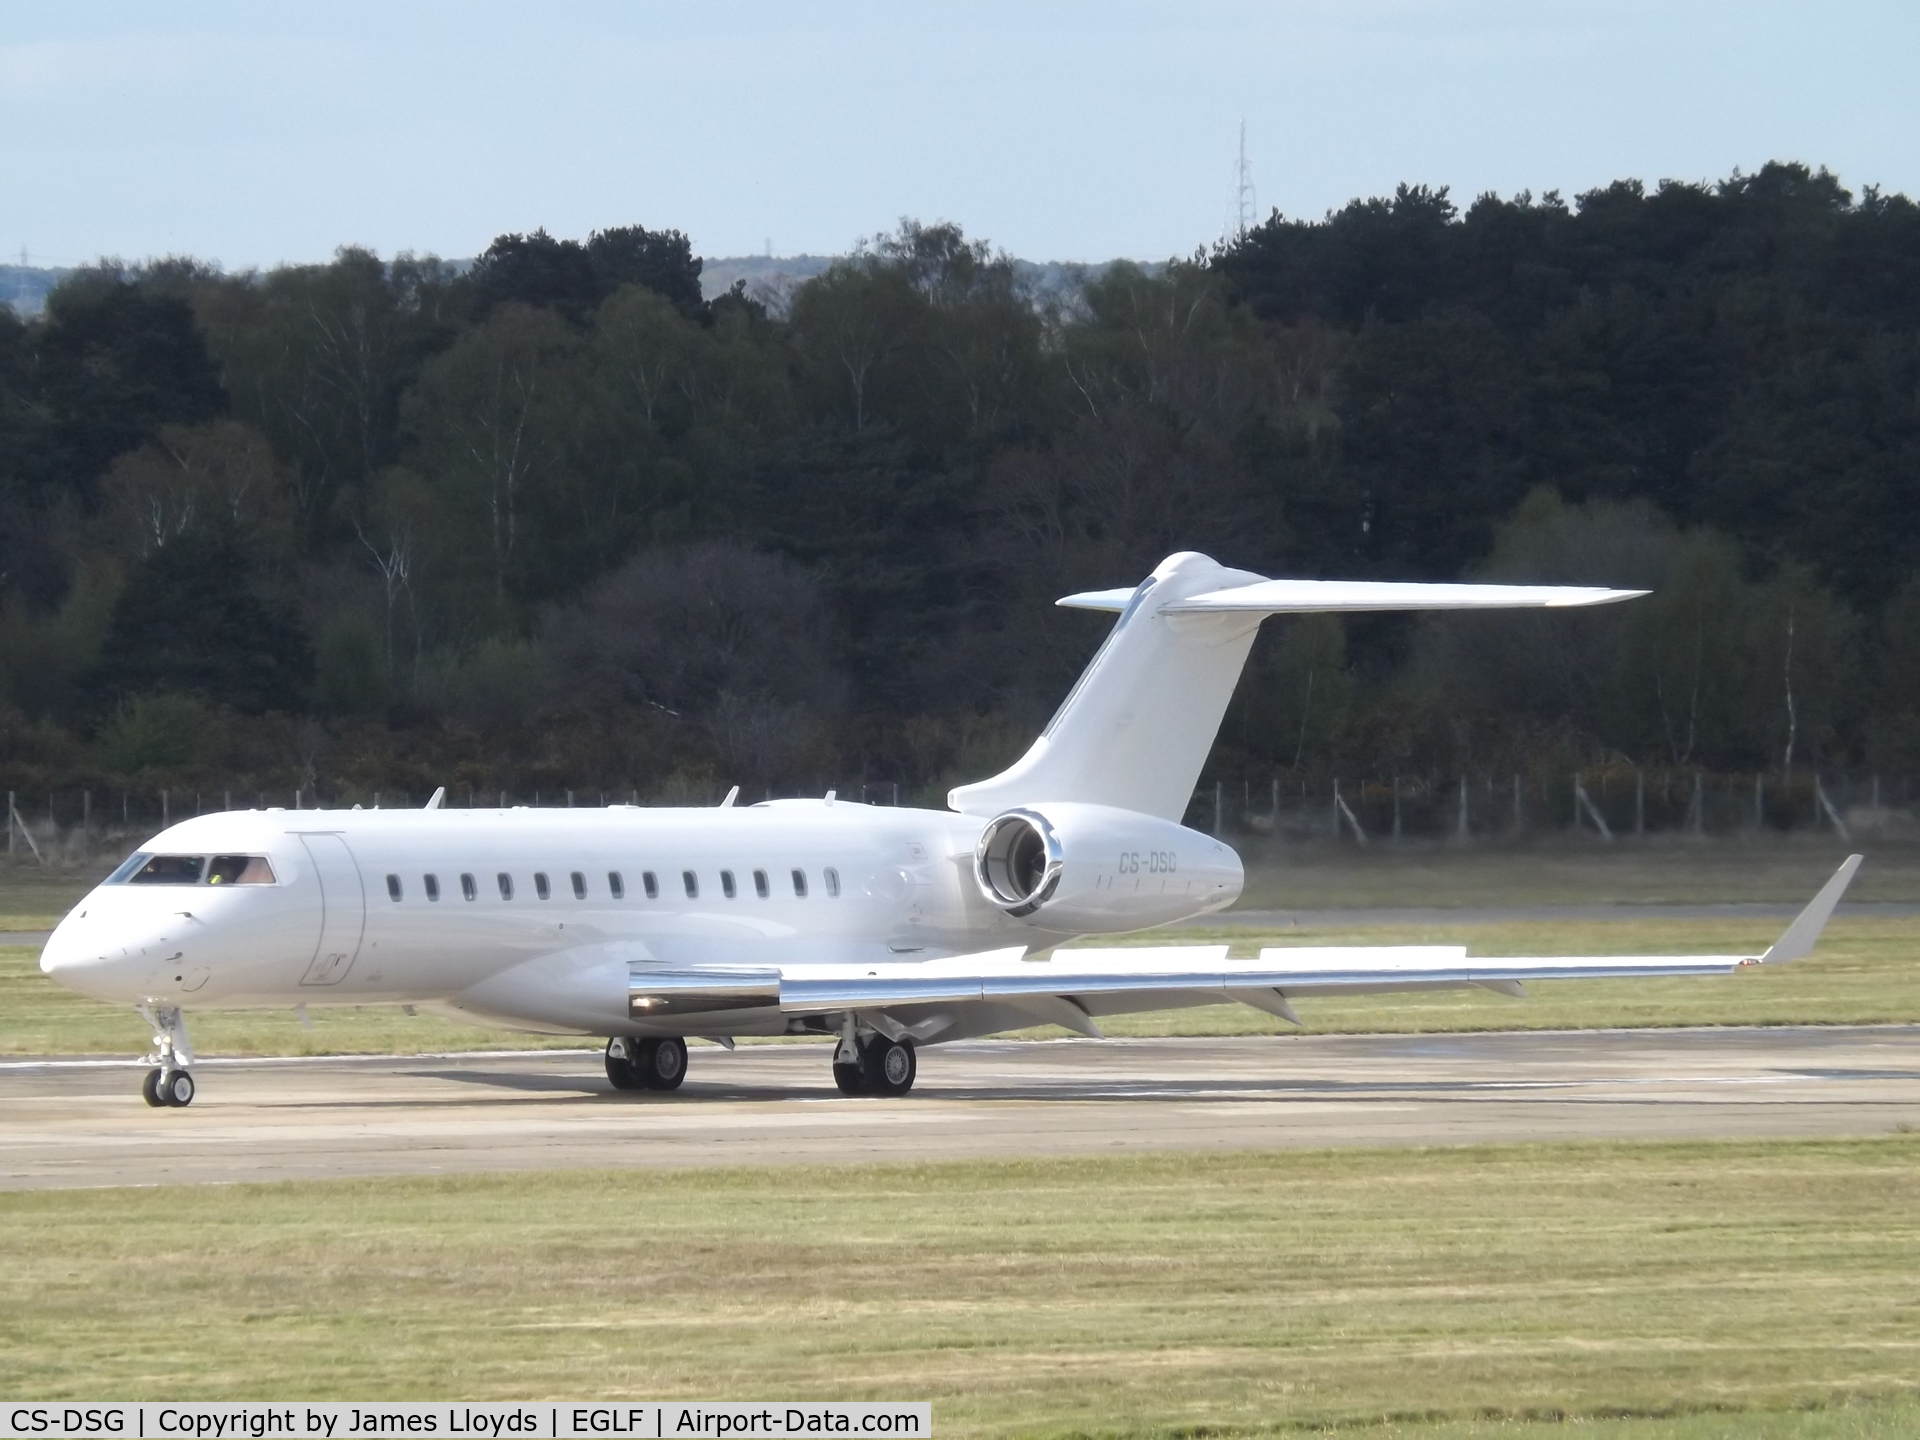 CS-DSG, 2018 Bombardier BD 700-1A10 Global 6000 C/N 9843, Arriving at Farnborough Airport.